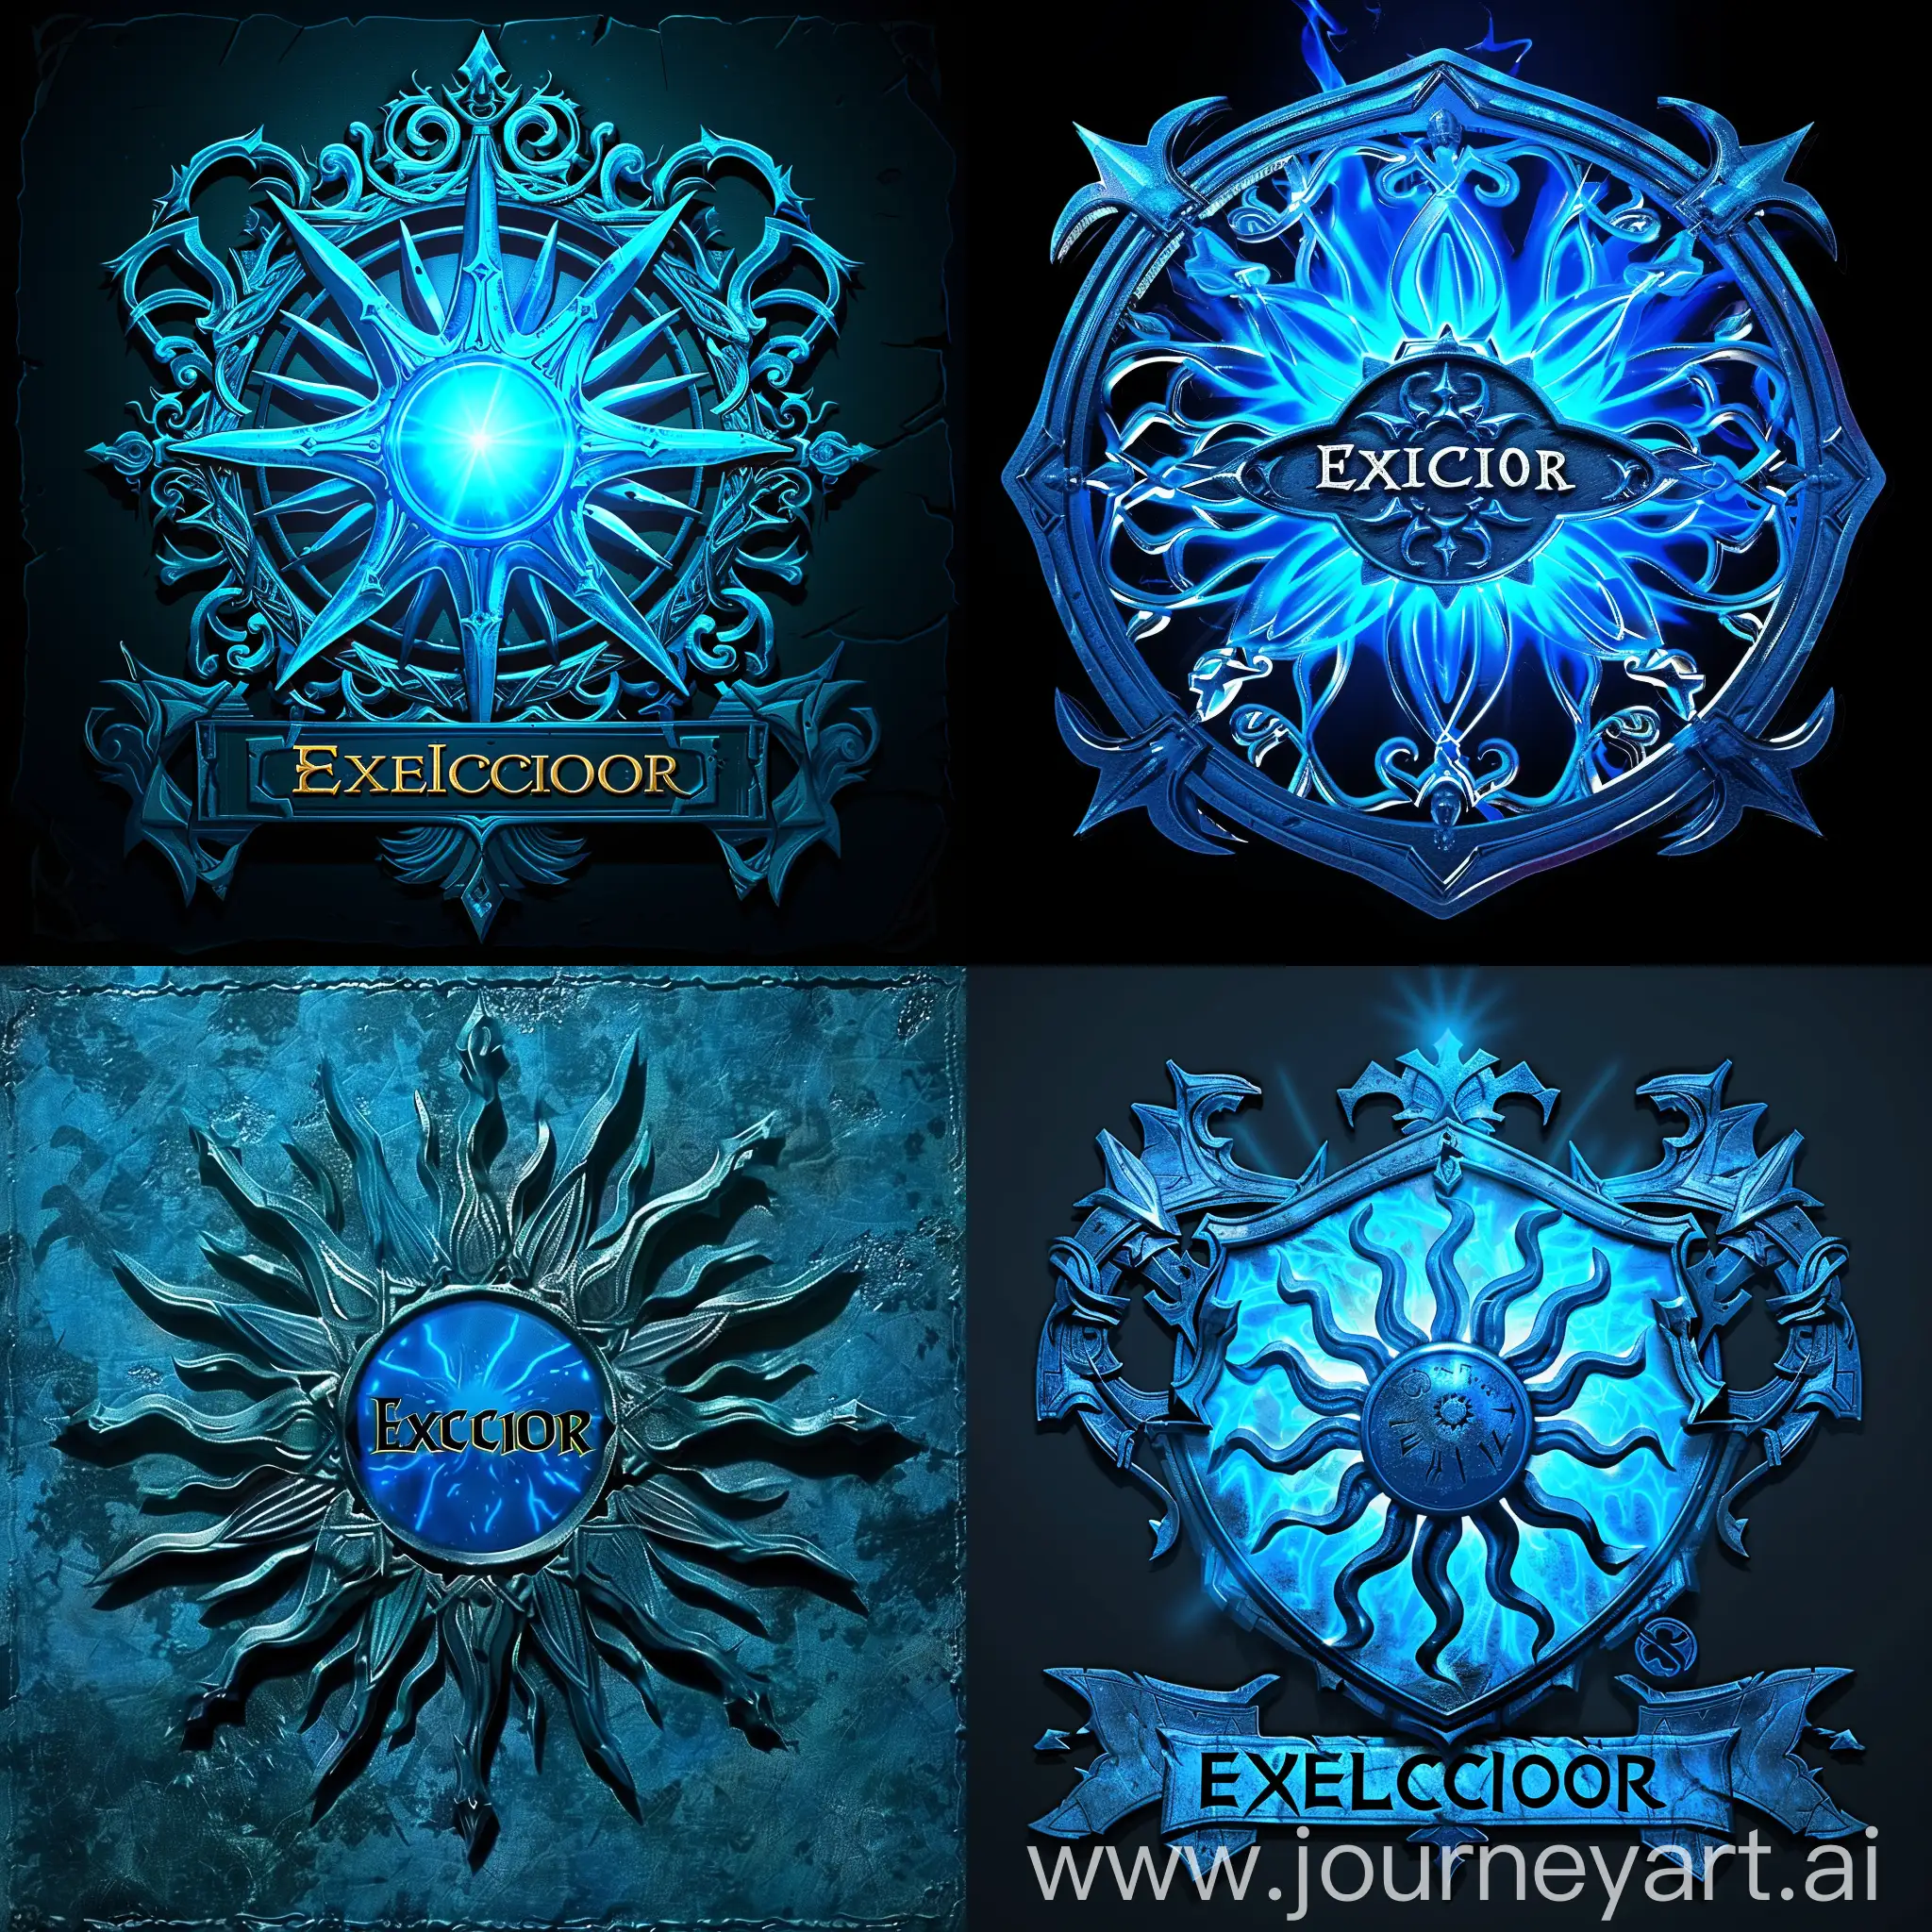 Emblema azul con el símbolo de un sol estilo medieval, está brillando con magia azul y tiene grabado el título "Exelcior" como un título de serie de animación de calabozos y dragones